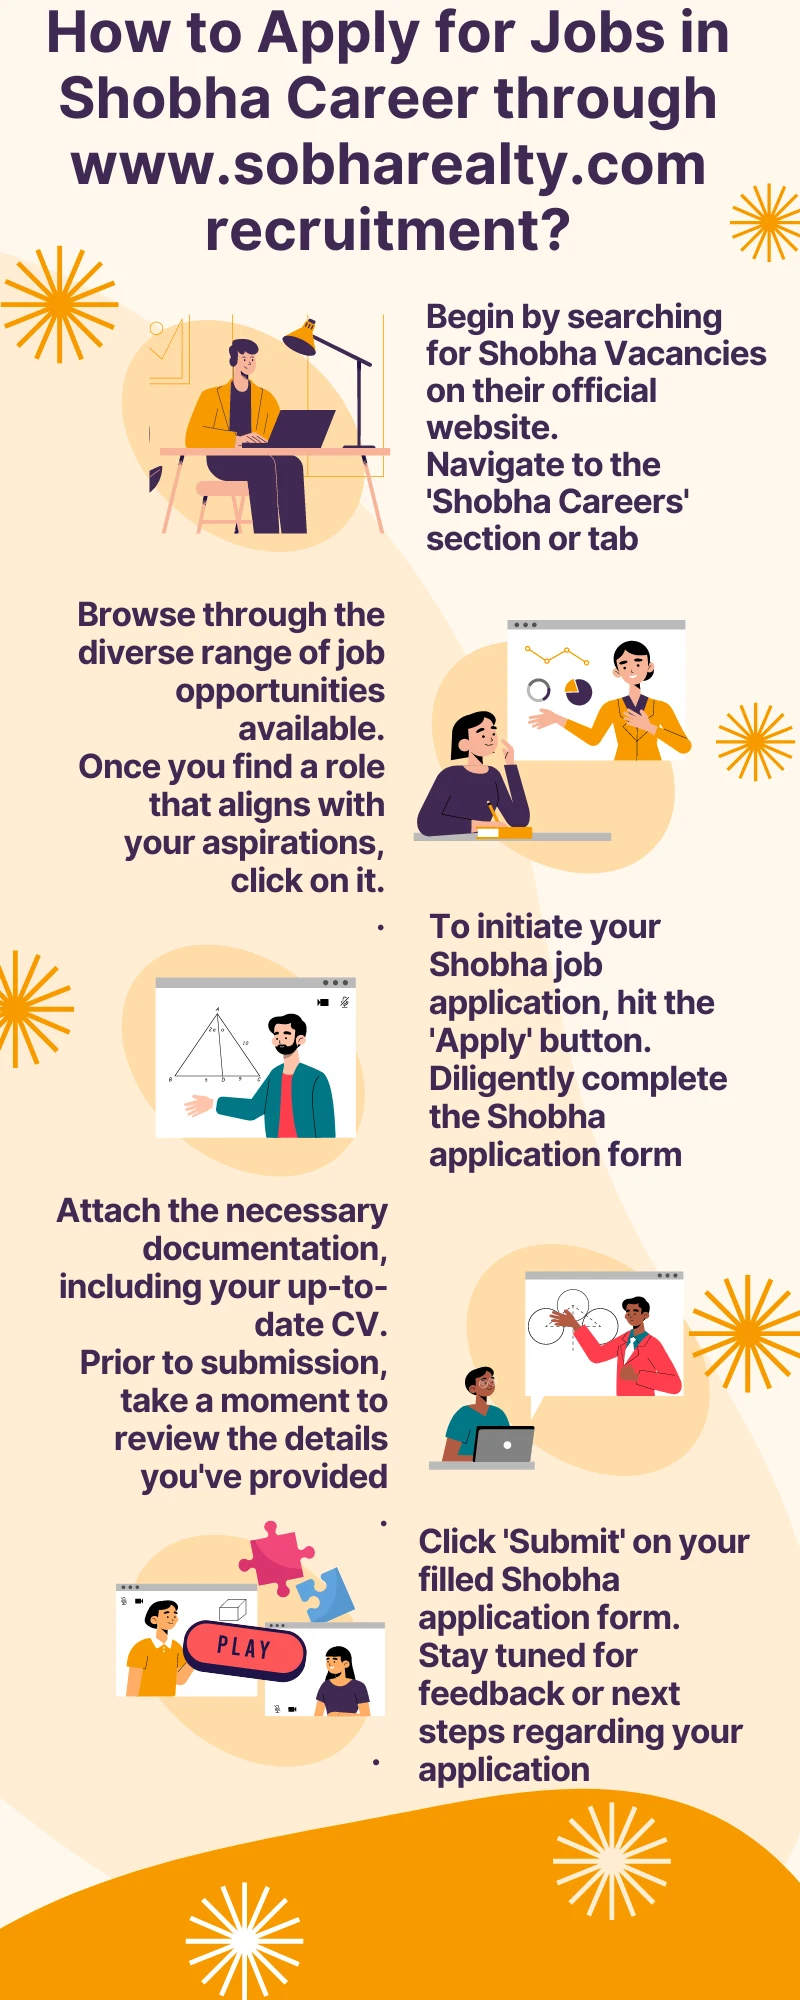 How to Apply for Jobs in Shobha Career through www.sobharealty.com recruitment?